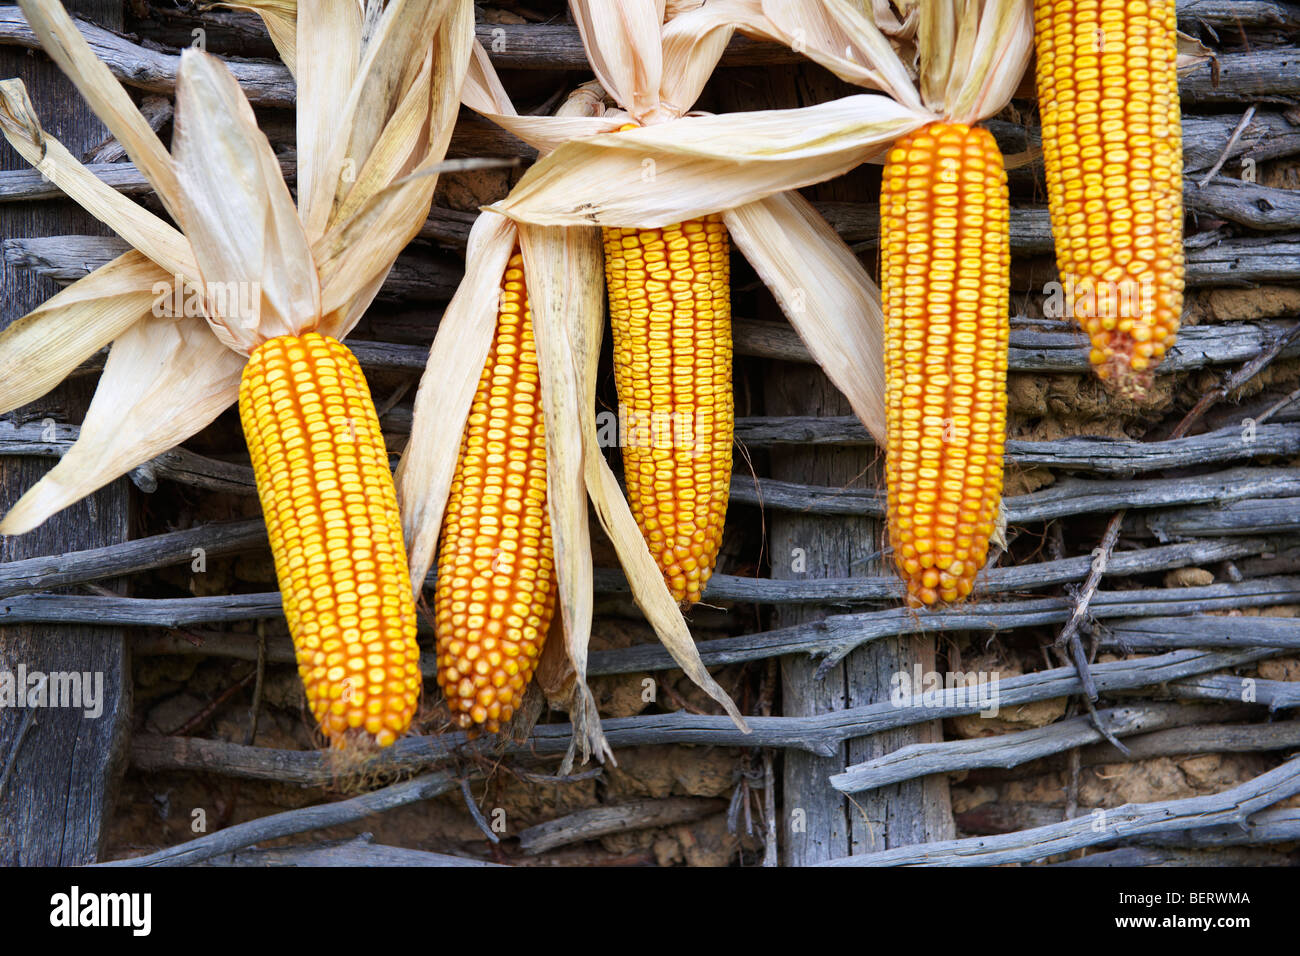 Las mazorcas de maíz secado - Hungría Foto de stock